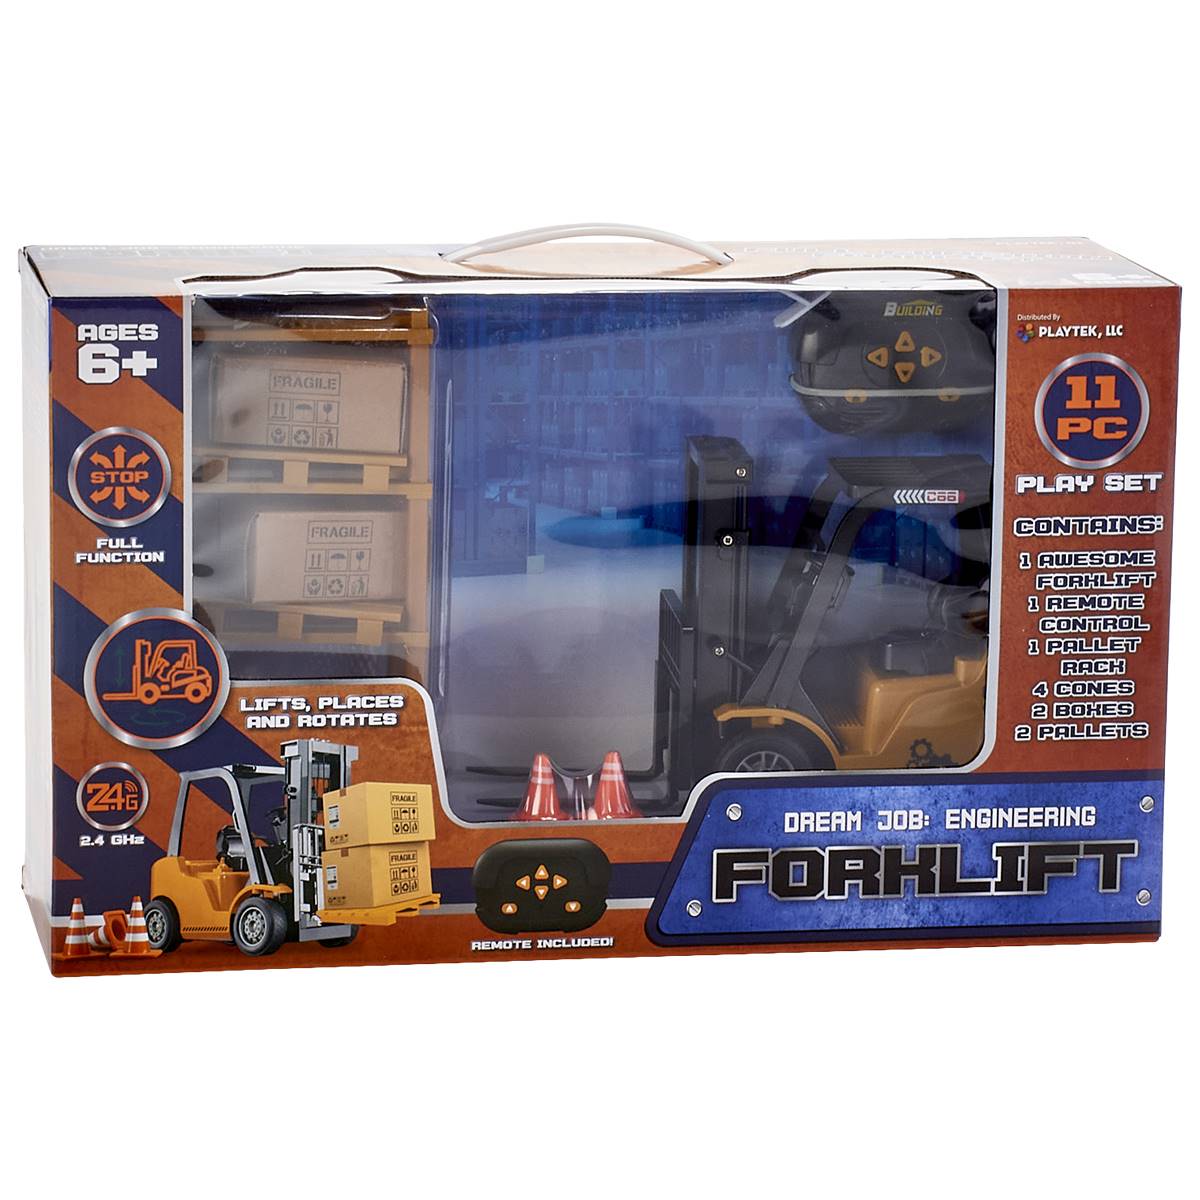 Playtek Remote Control Forklift Set